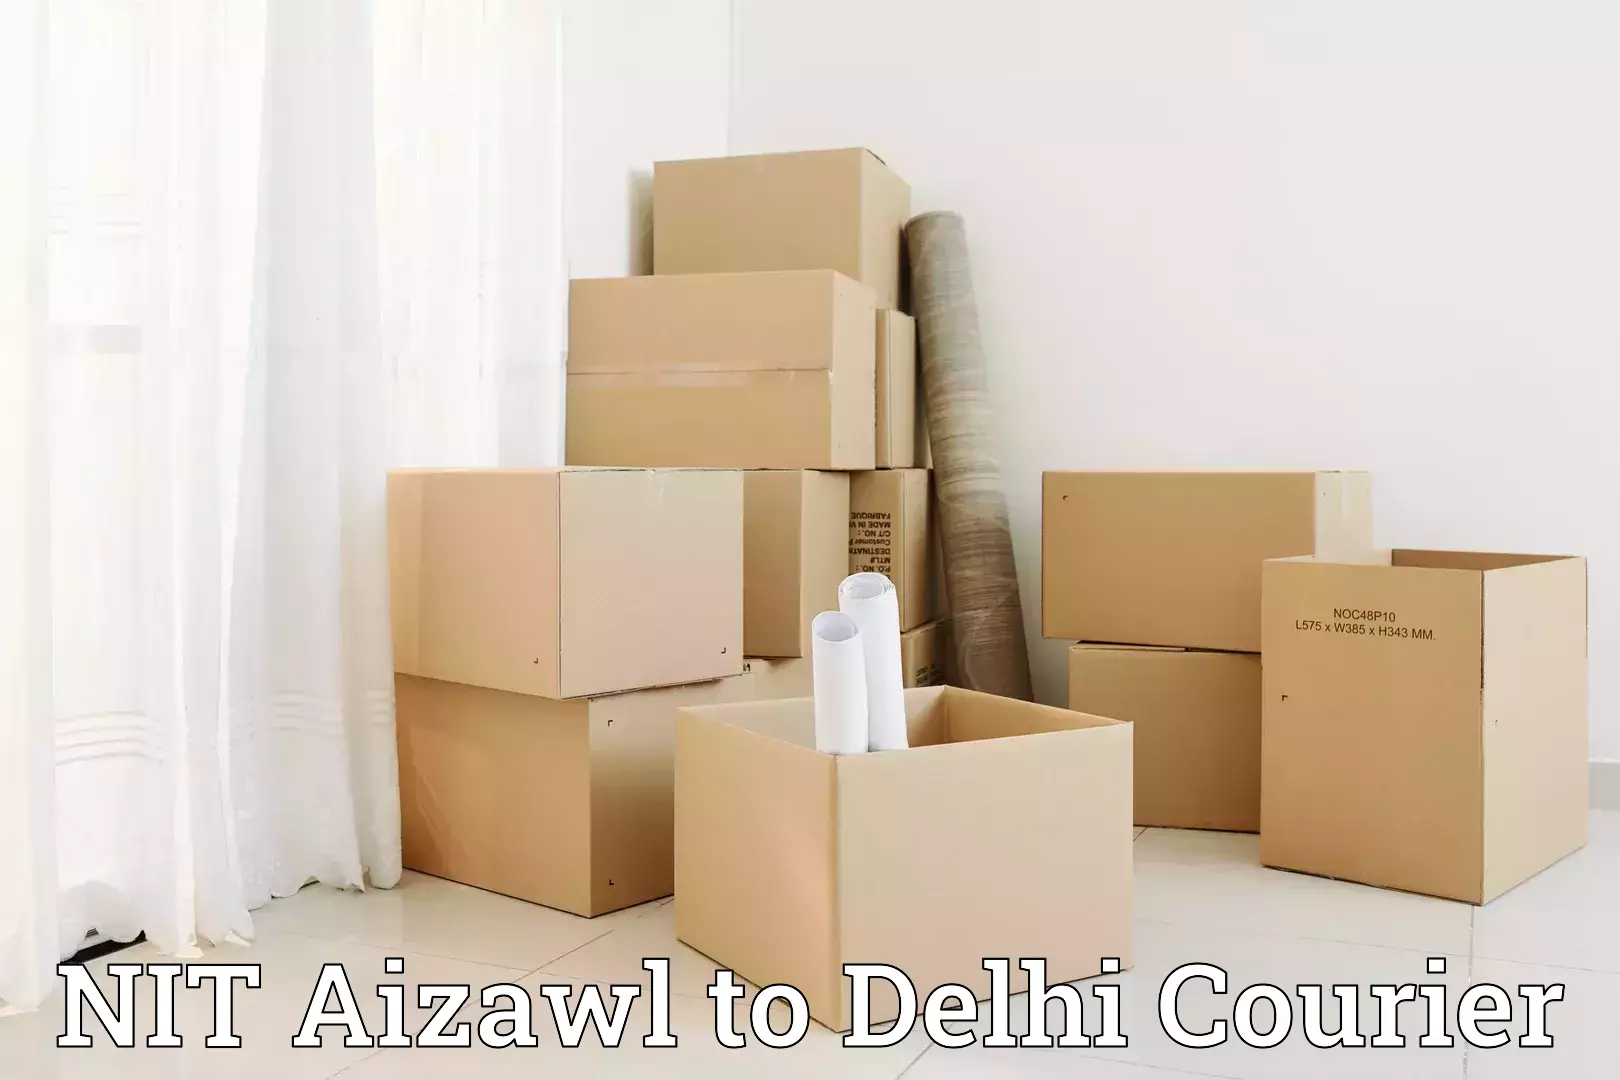 Furniture delivery service NIT Aizawl to Burari